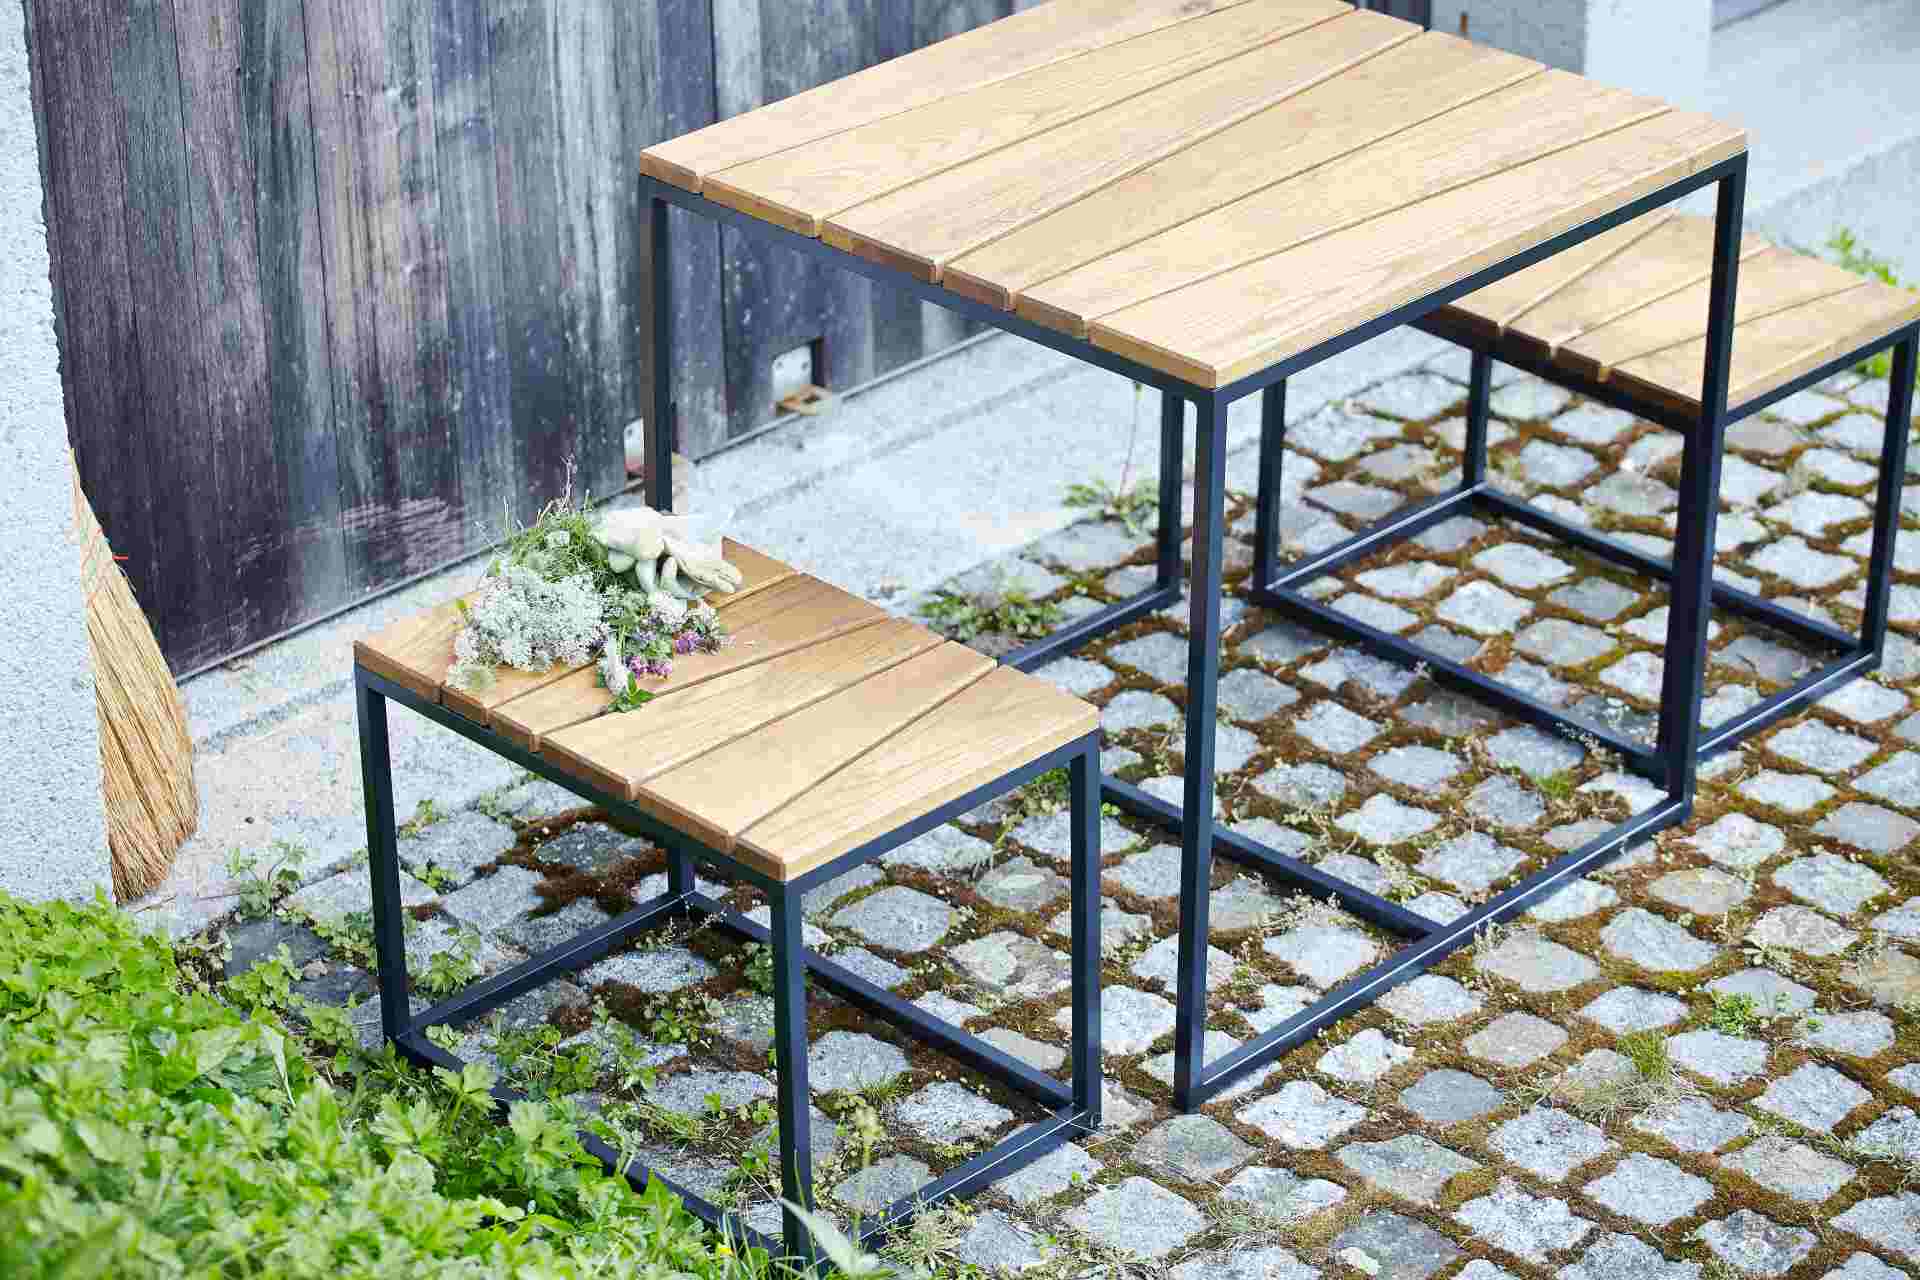 Die Tischgruppe Alois der Marke Jan Kurtz überzeugt mit ihrem modernen und schlichtem Design. Gefertigt wurde die Tischgruppe aus massivem Robinienholz und Metall.